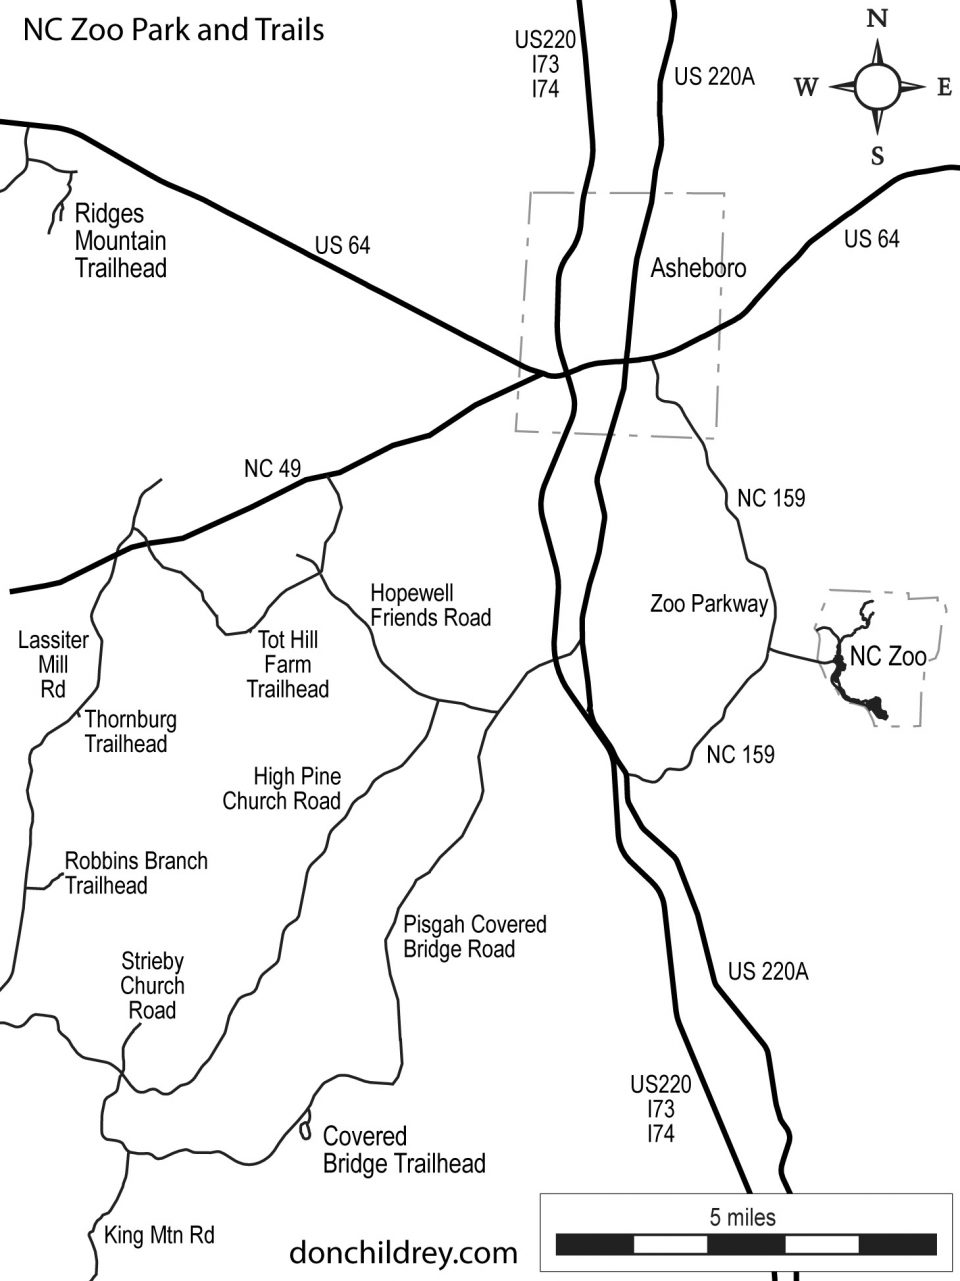 NC Zoo trails map